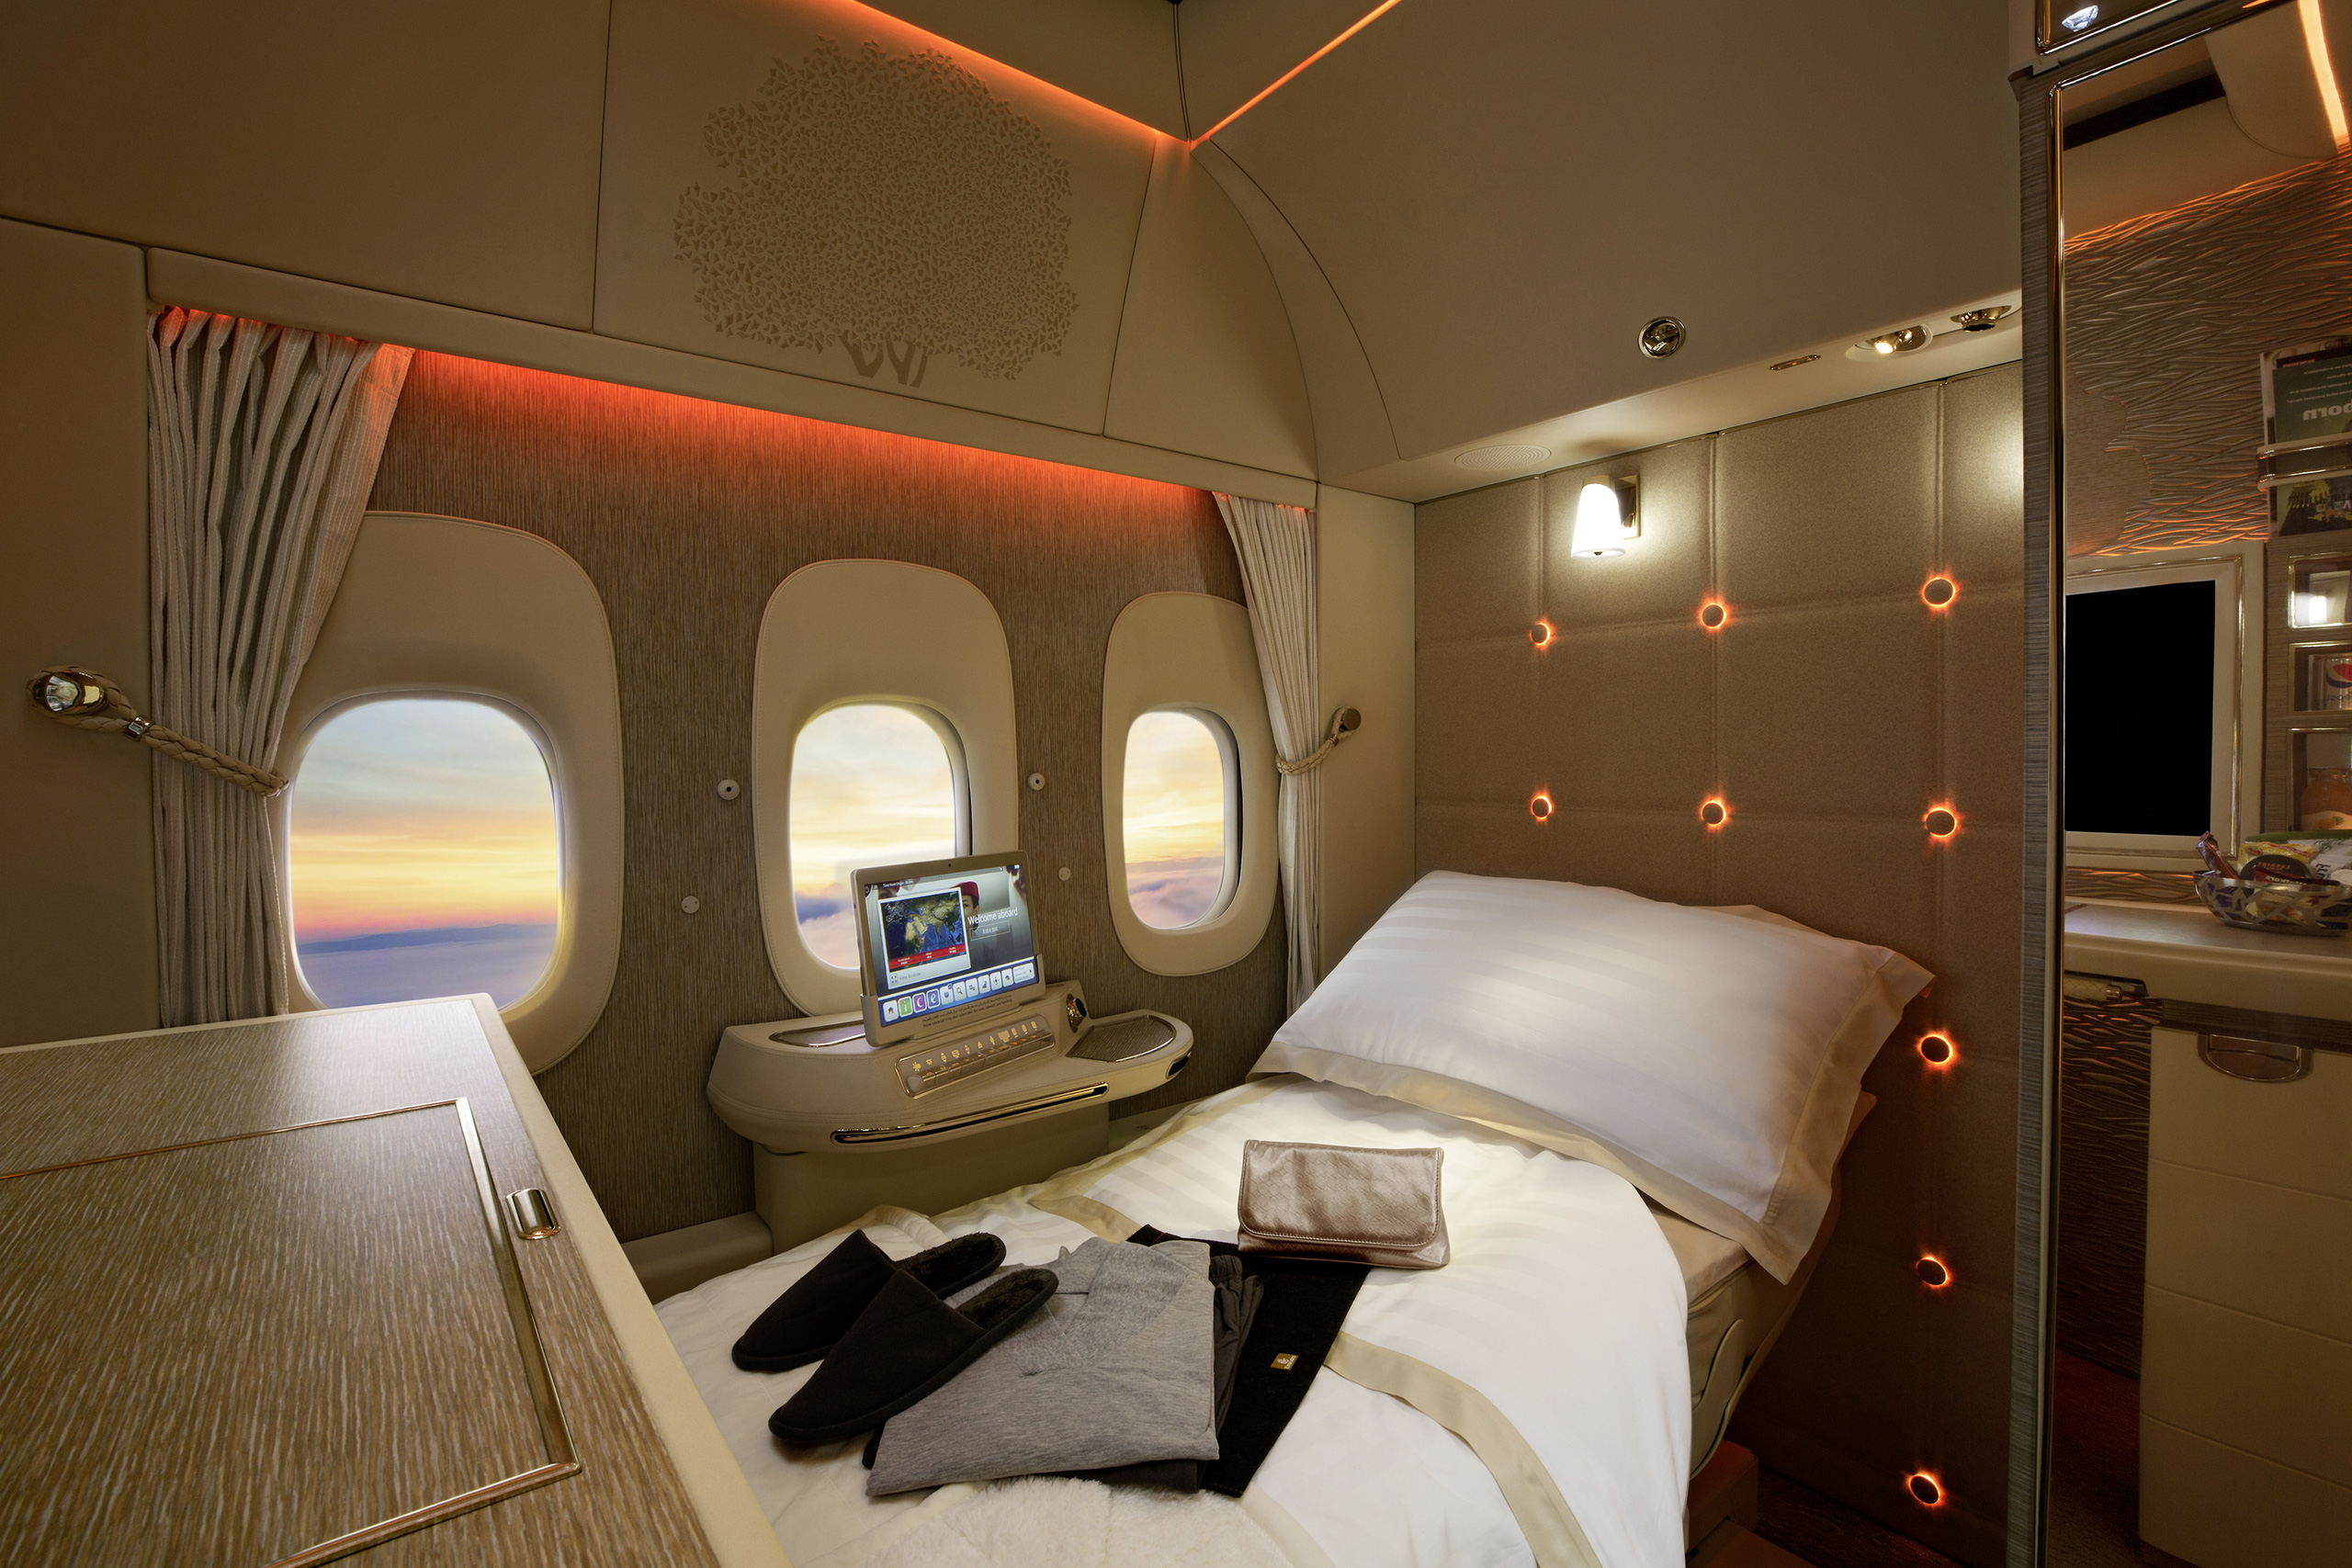 3 chiếc giường đắt đỏ hơn chiếc vé hạng nhất, cung cấp không gian thoải mái nhất trên bầu trời với giá tới hàng tỷ đồng/chuyến đi - Ảnh 2.